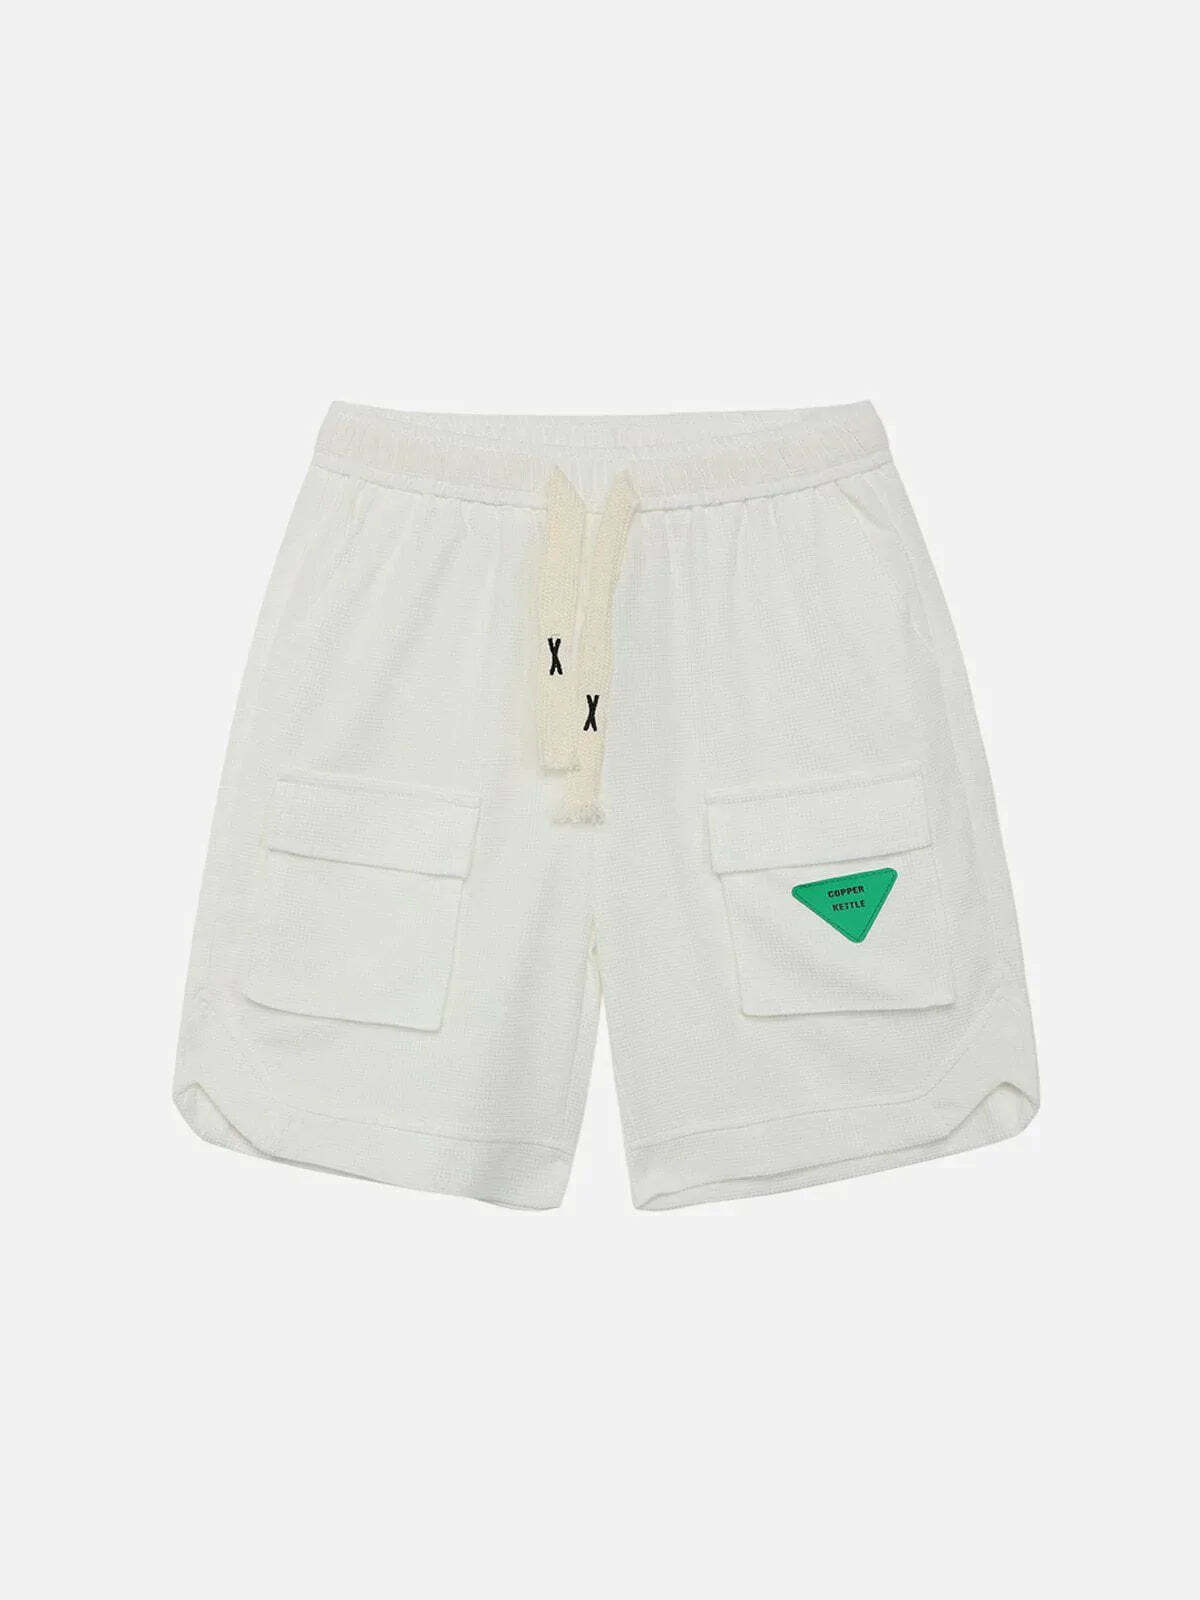 drawstring cargo shorts innovative streetwear essential 6777